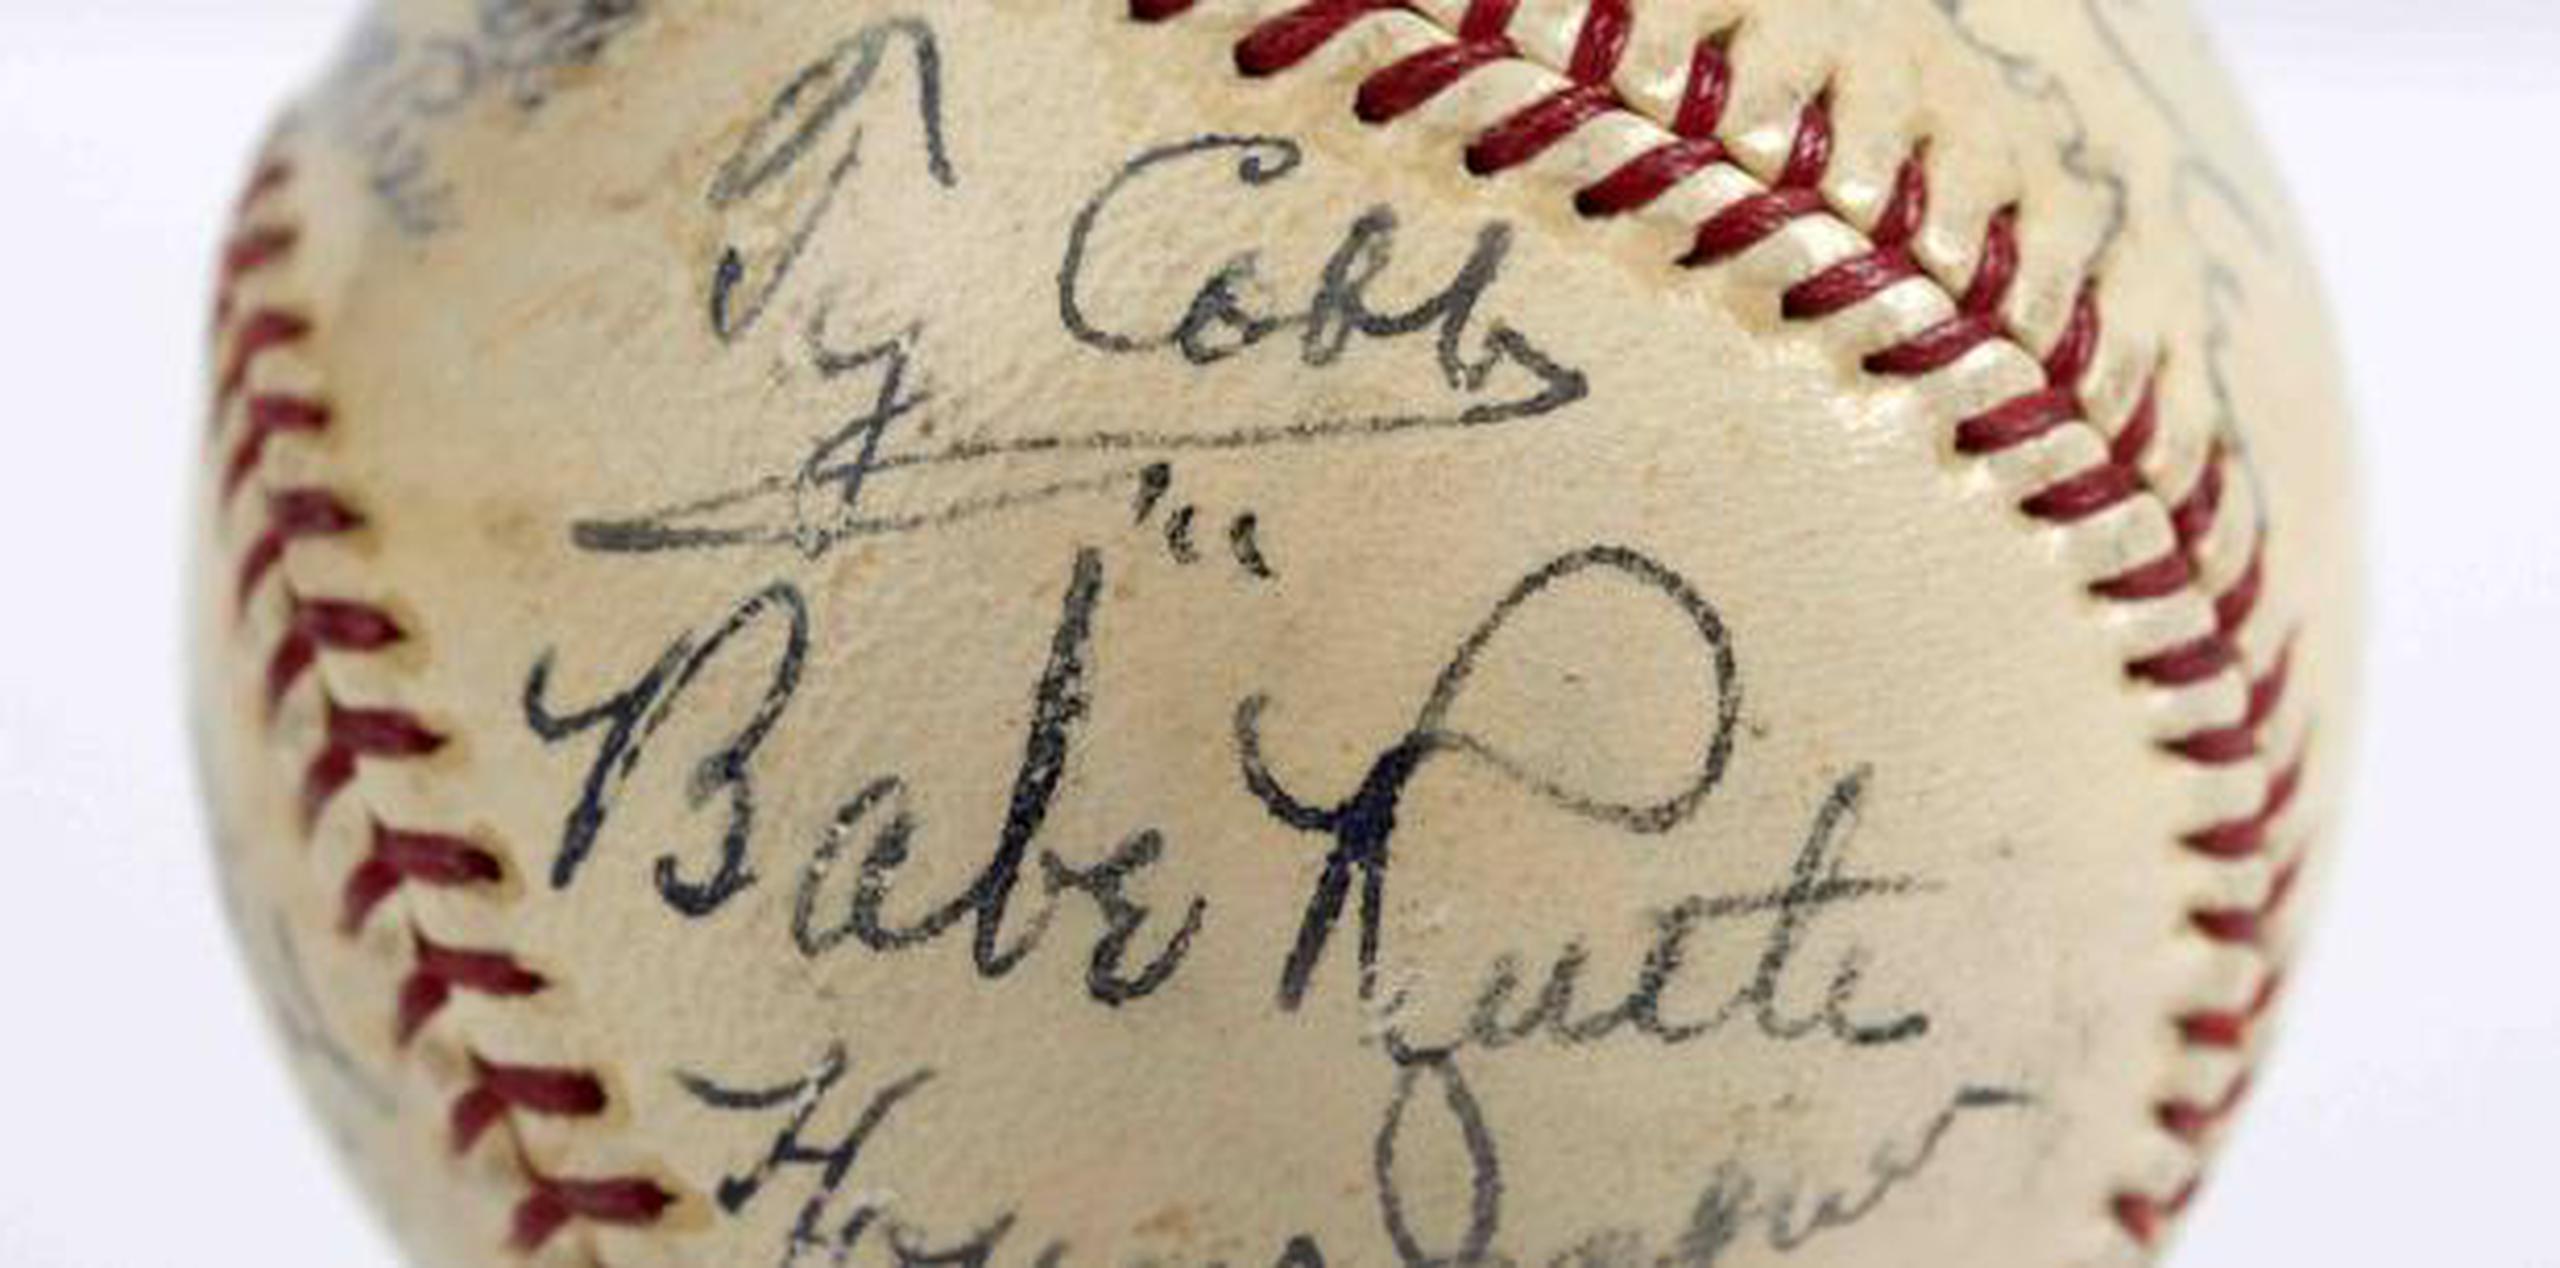 Se conservan varias pelotas autografiadas de aquella fecha, pero la mayoría presenta firmas de otros peloteros o dignatarios, lo que reduce su valor. (SCP Auctions vía AP)